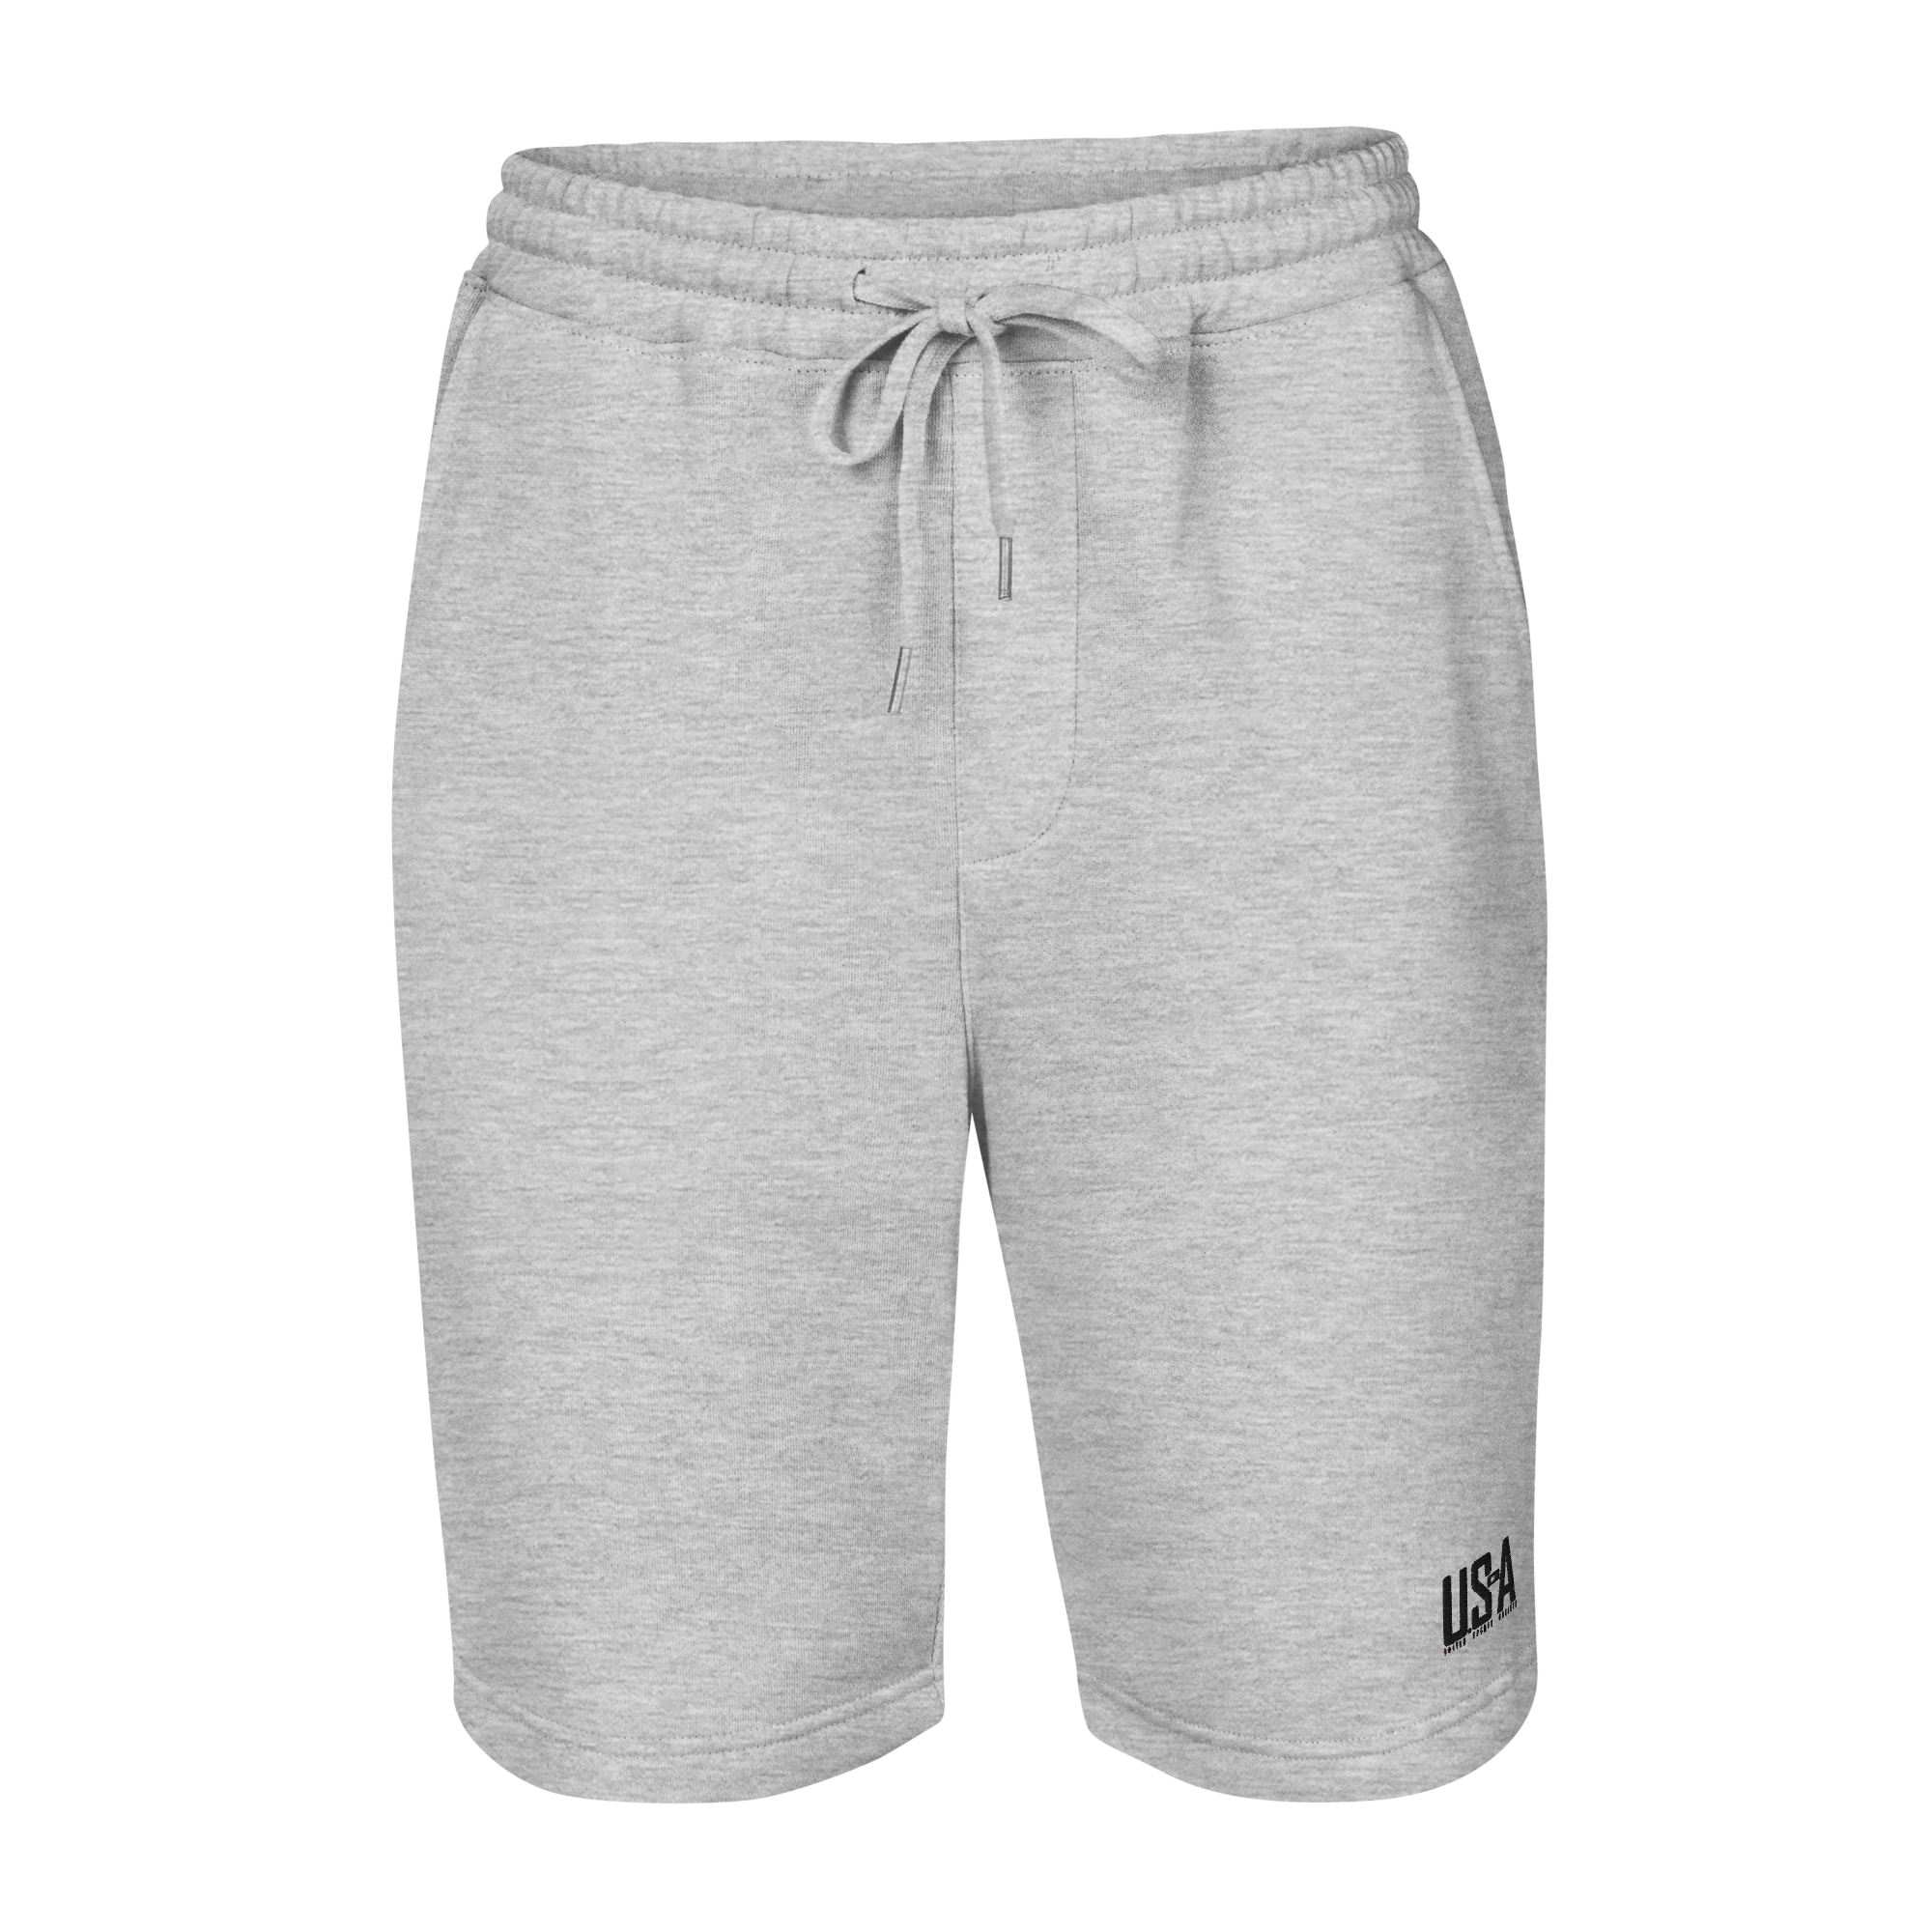 Men's fleece shorts - gray